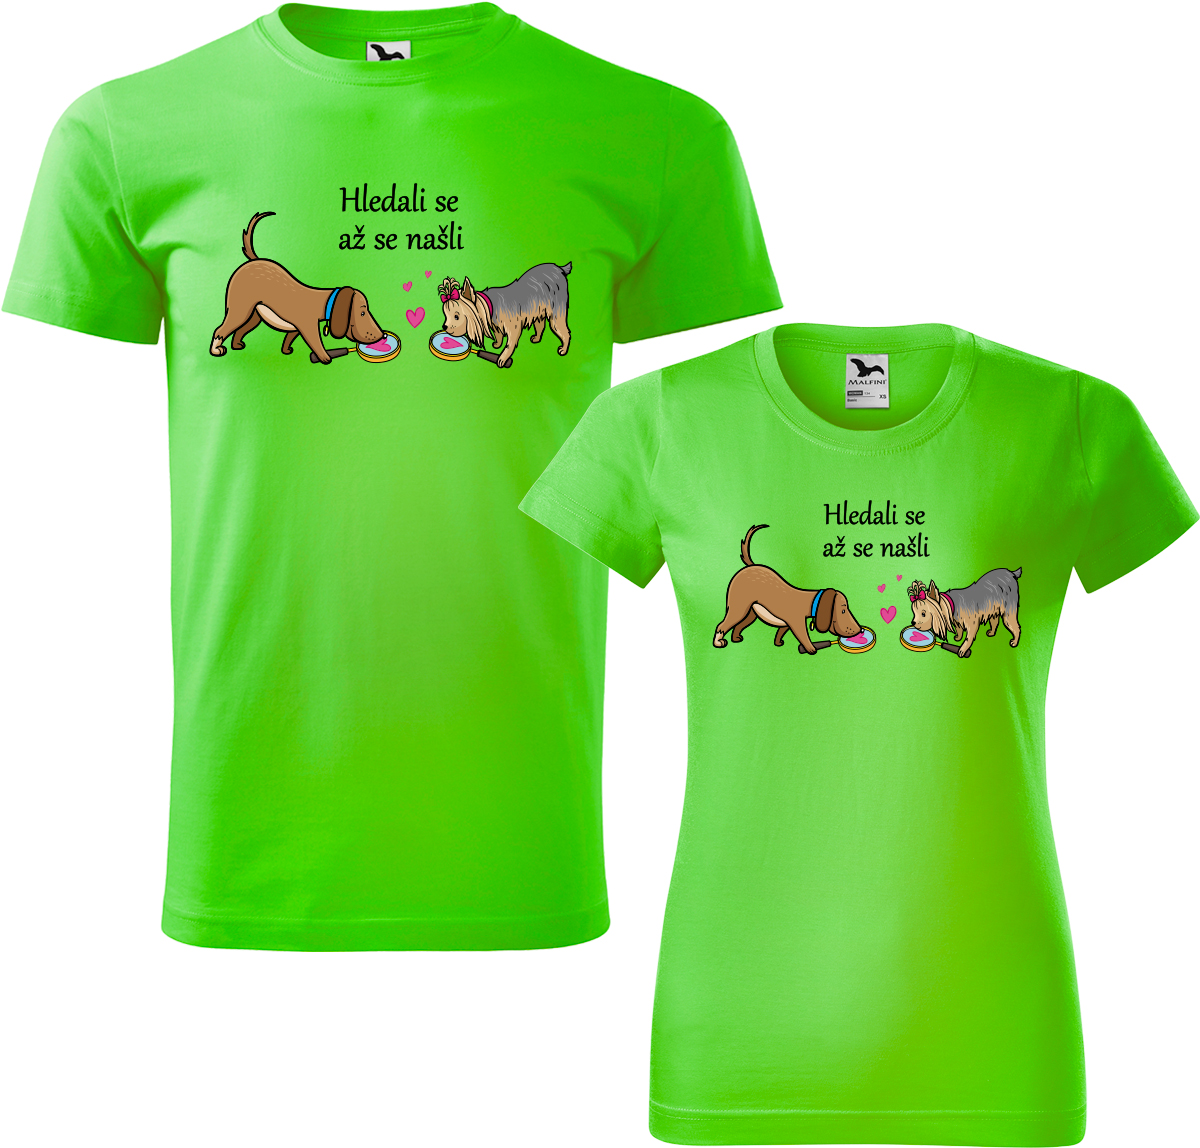 Trička pro páry - Hledali se až se našli Barva: Apple Green (92), Velikost dámské tričko: XL, Velikost pánské tričko: XL